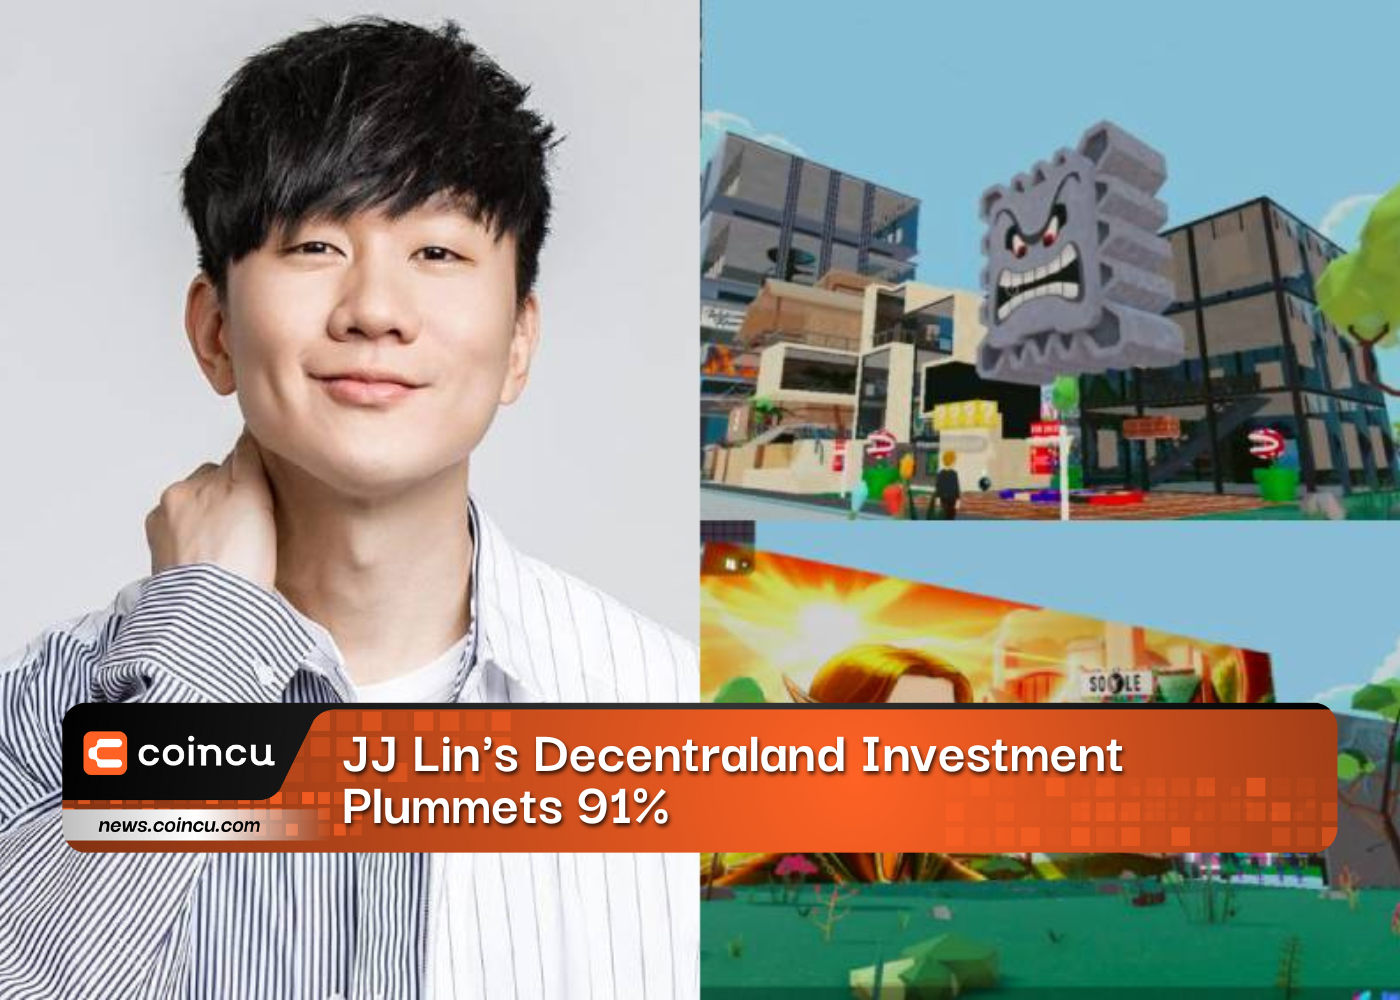 JJ Lins Decentraland Investment